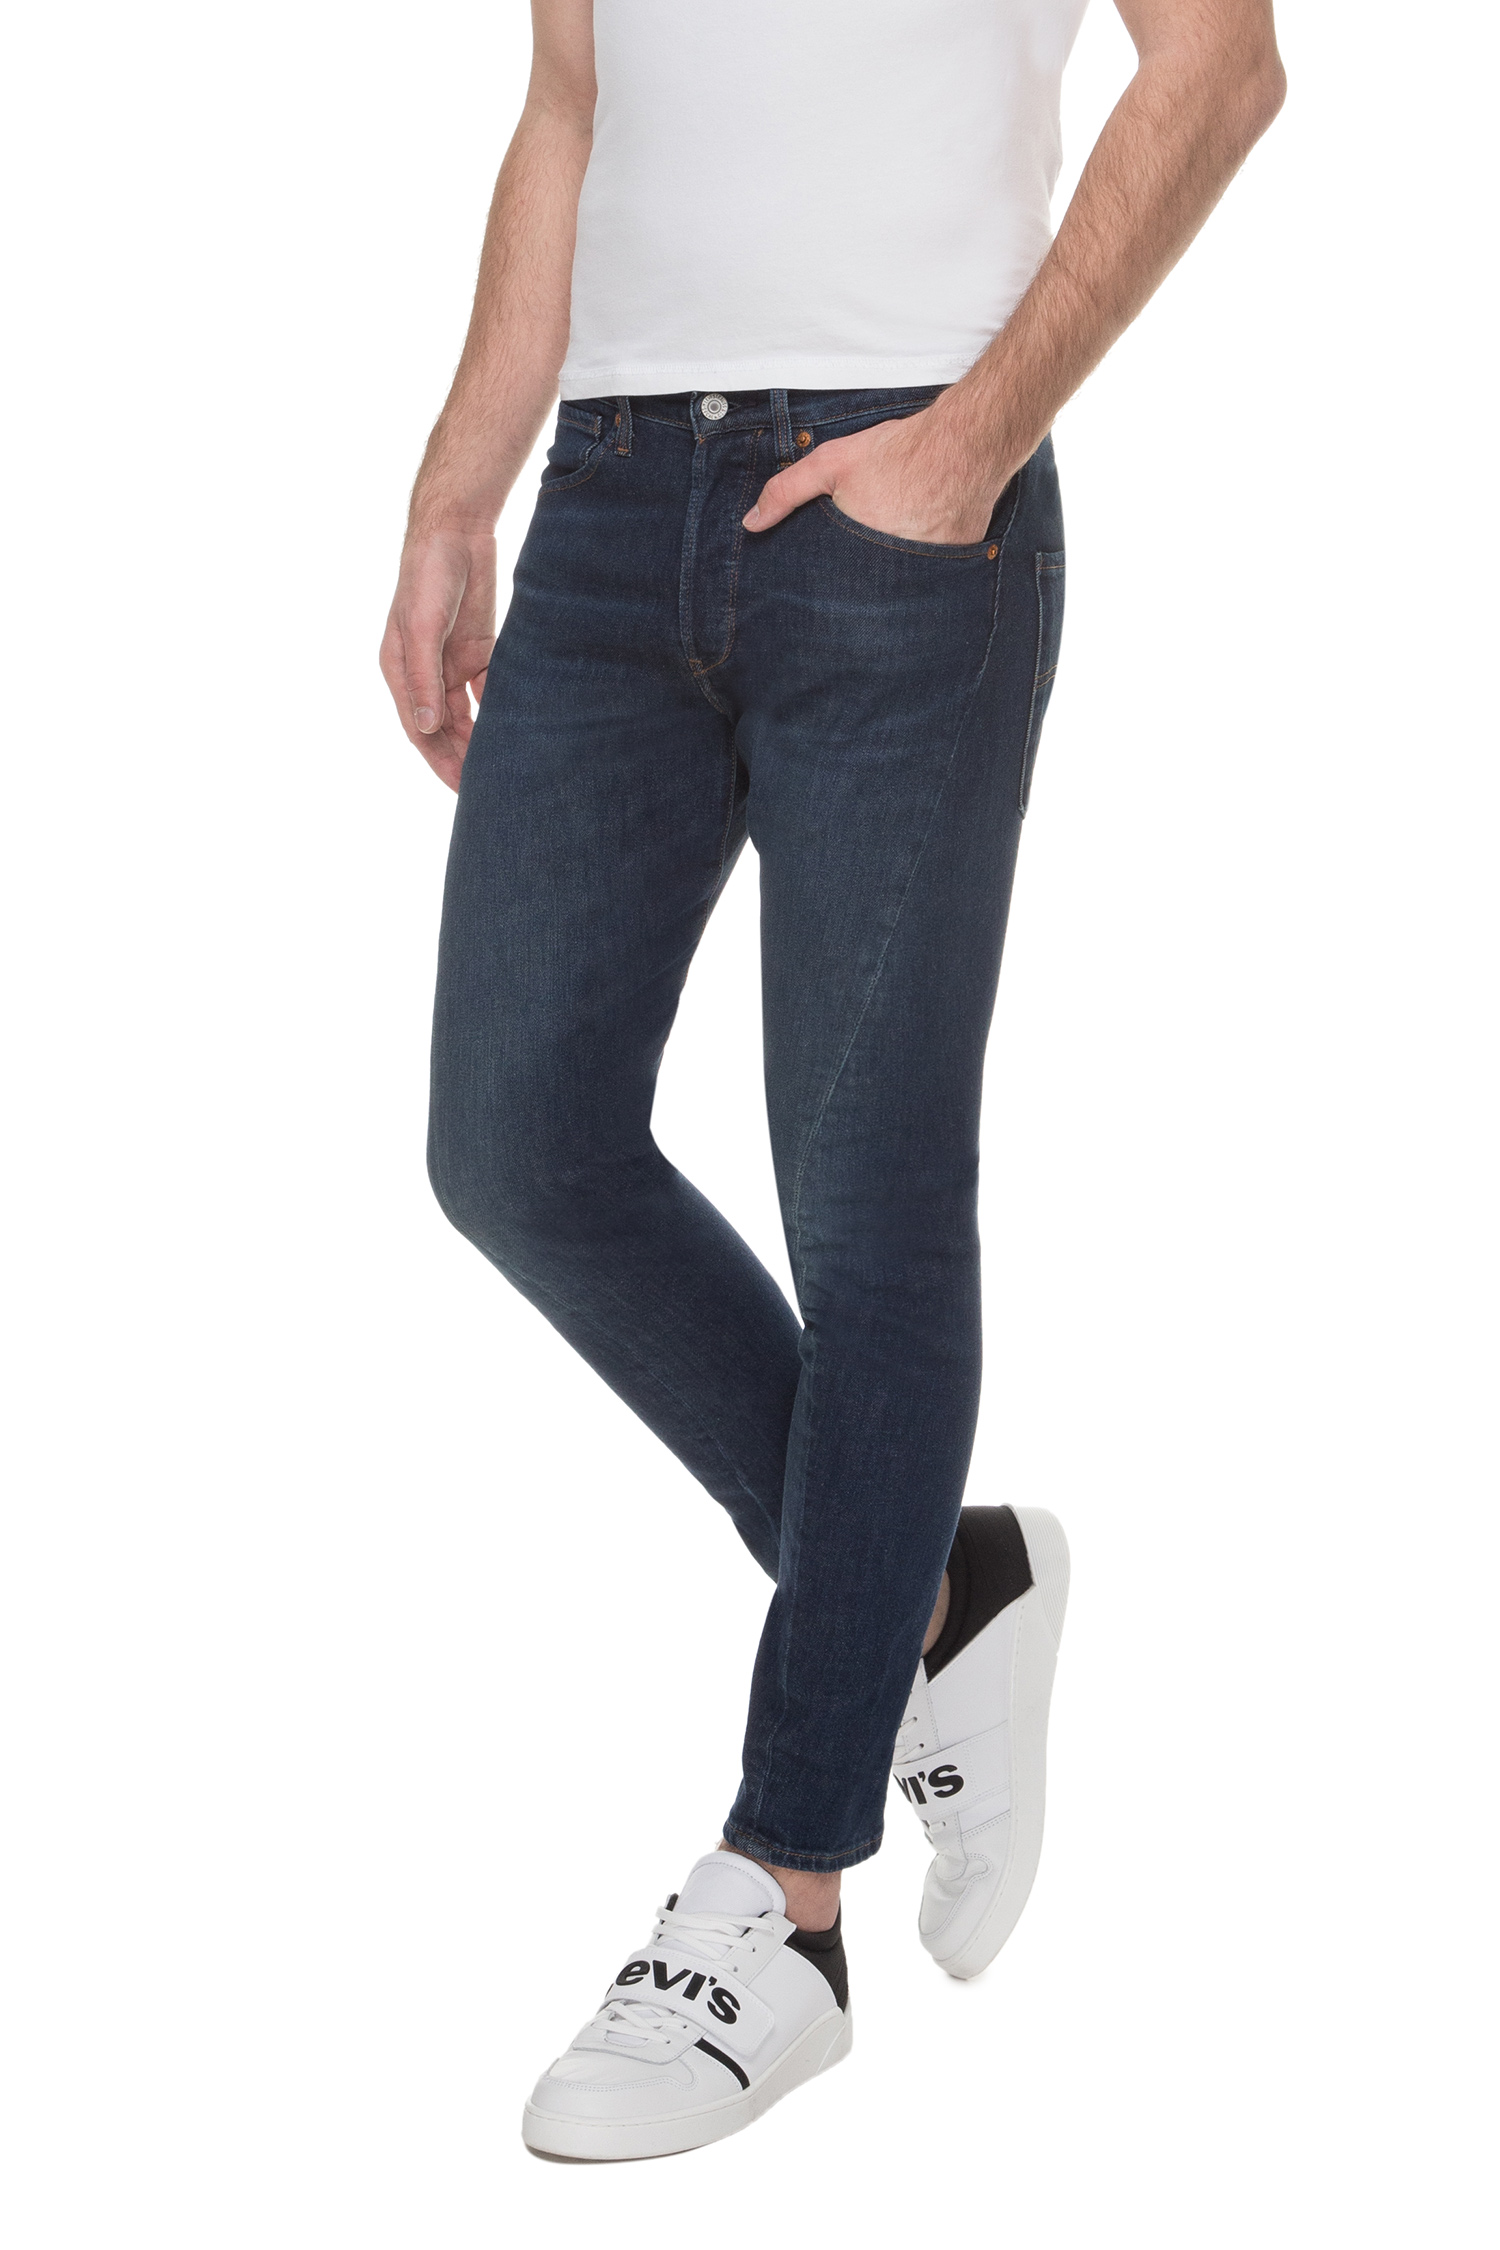 Мужские синие джинсы 512™ Slim Taper Levi’s® 74903;0003